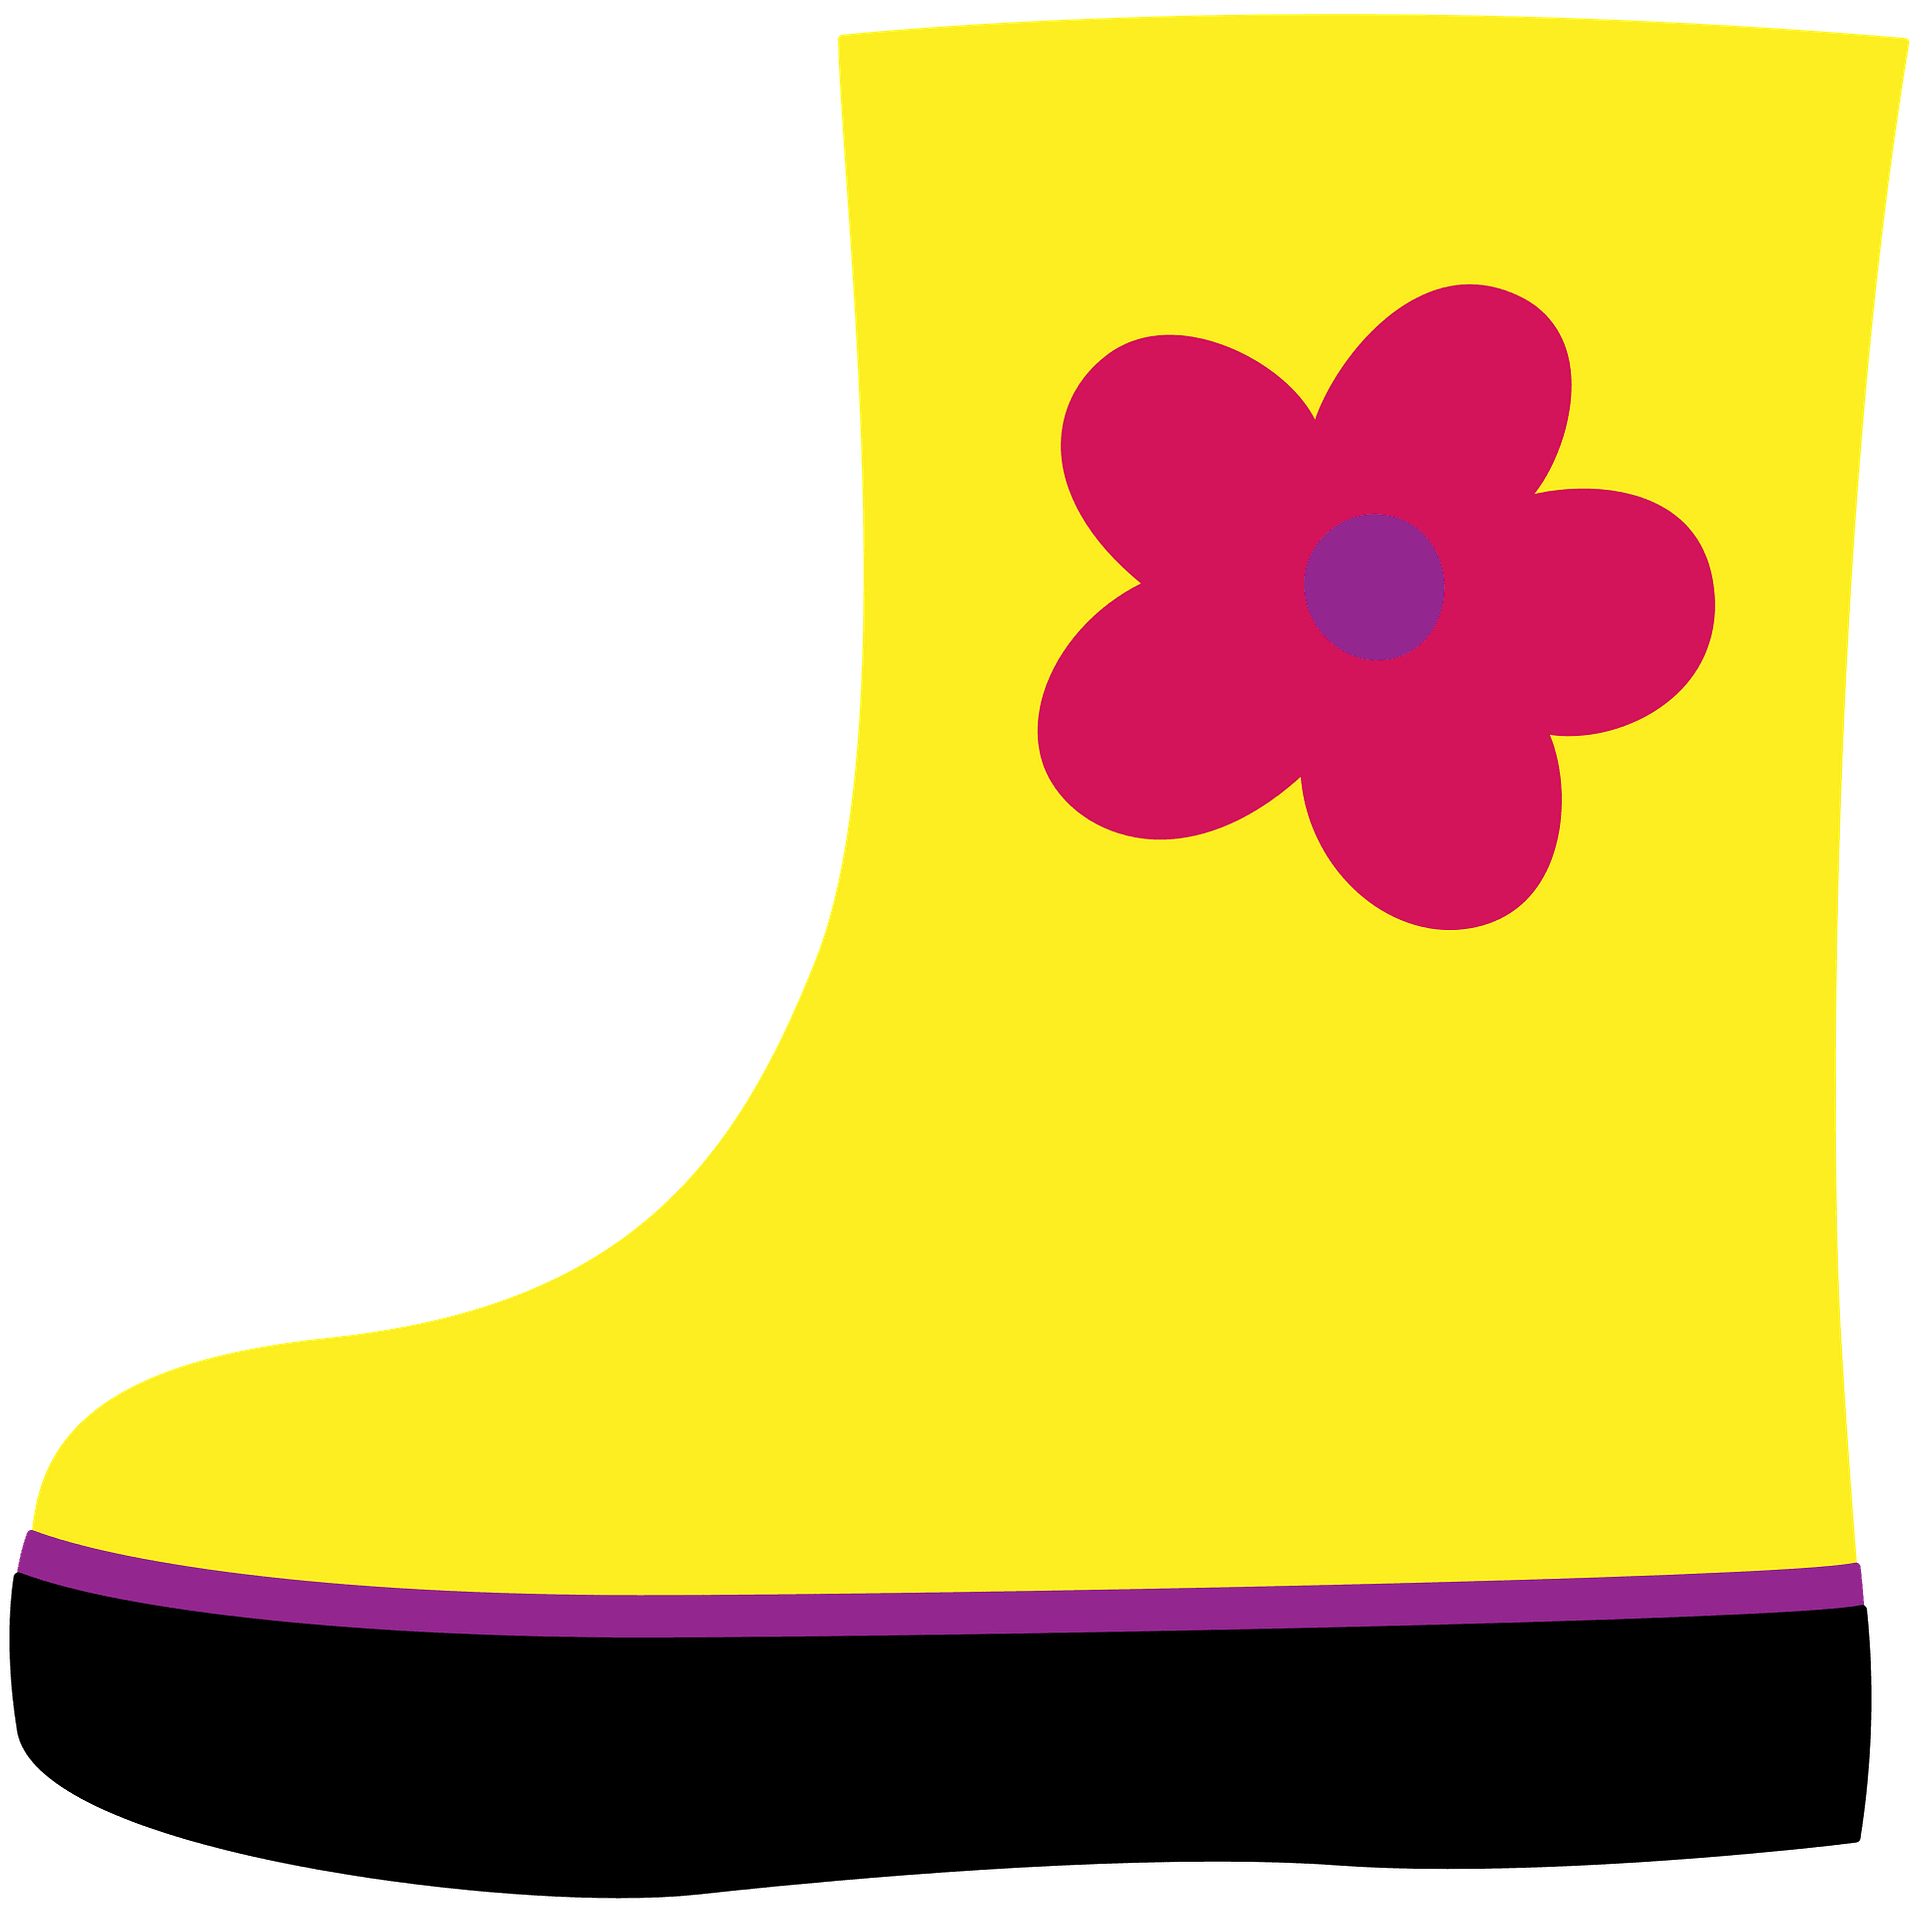 Stivali da pioggia giallo png immagine gratuita